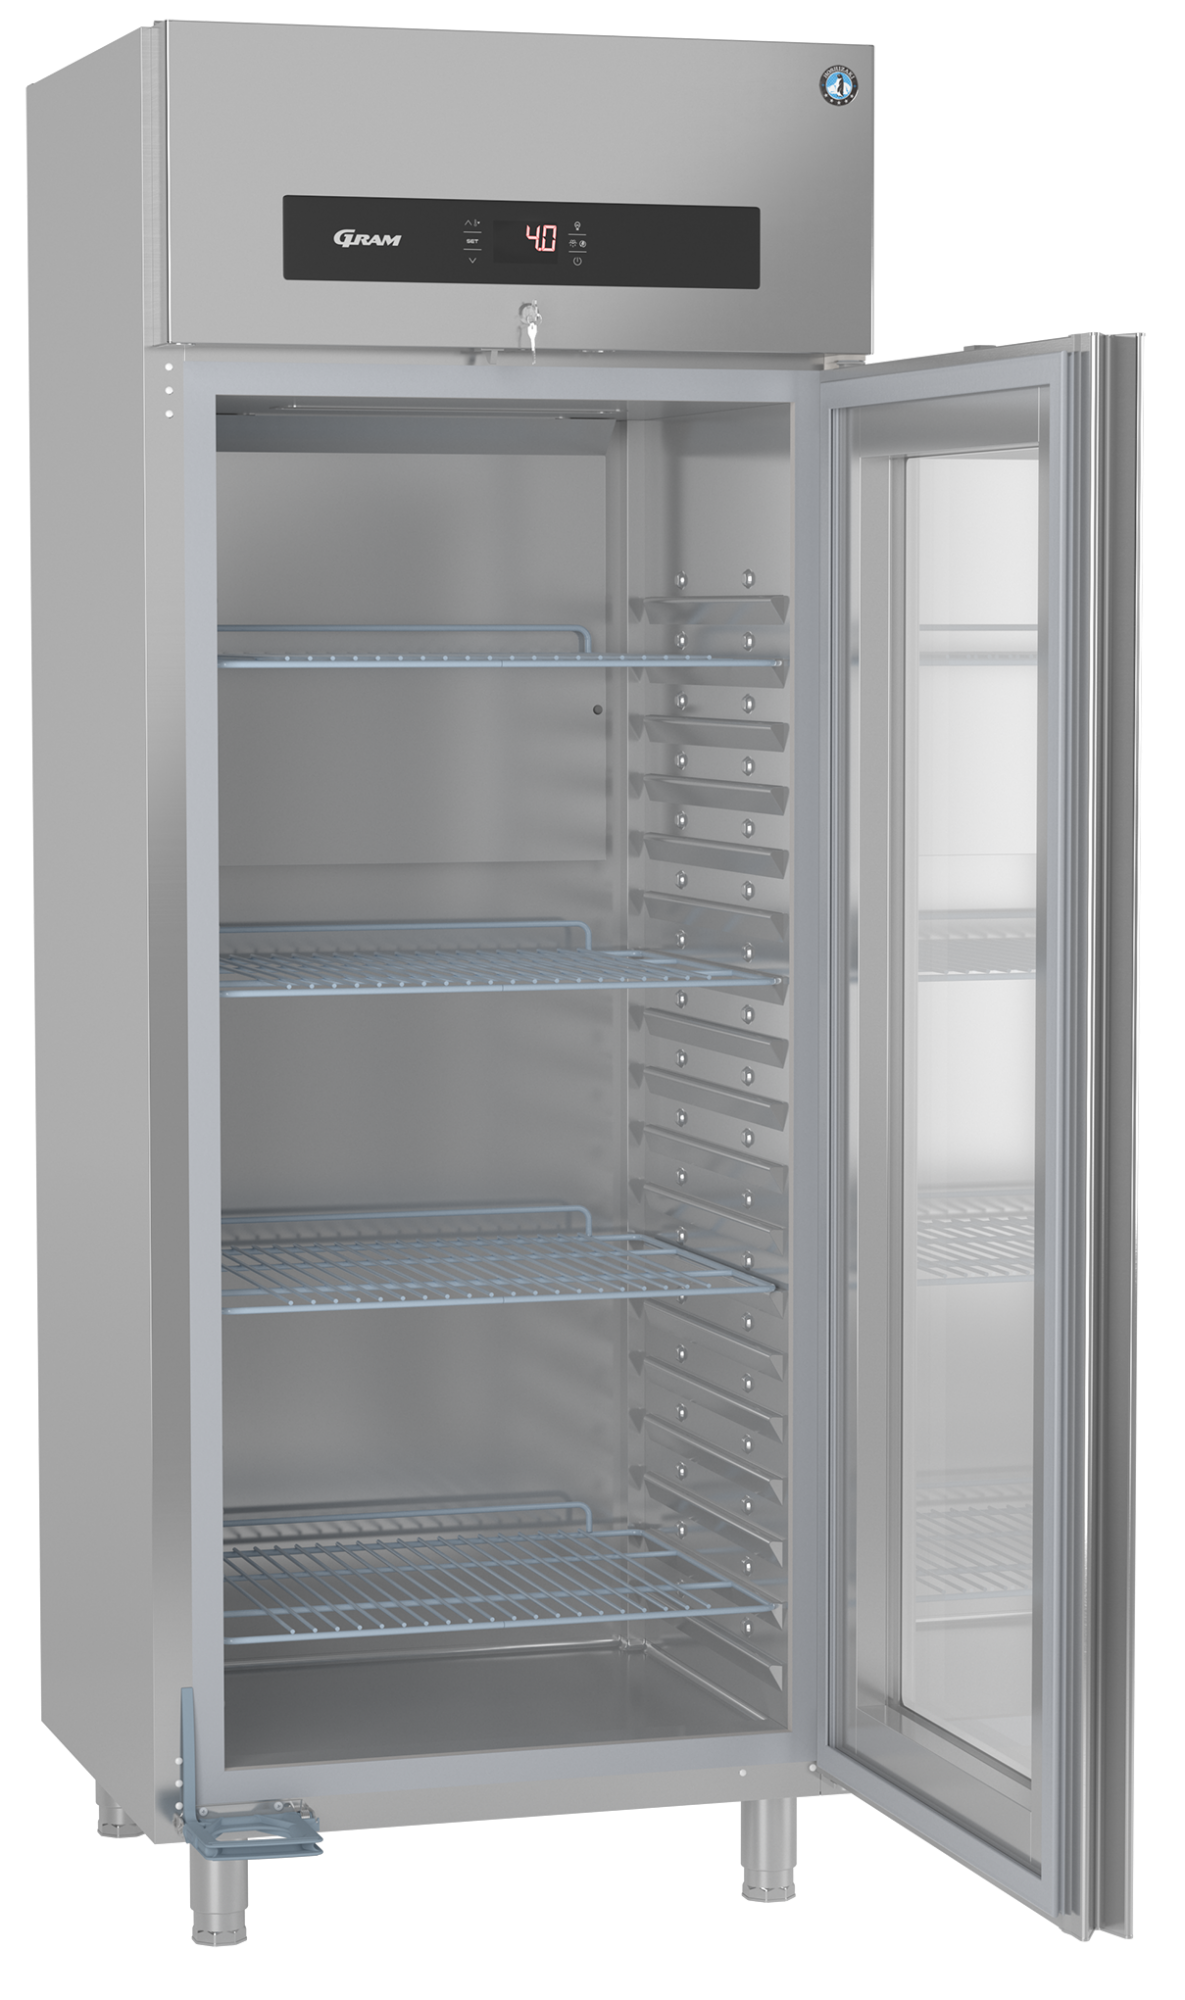 Hoshizaki Premier KG W80 L professionele koelkast met glasdeur